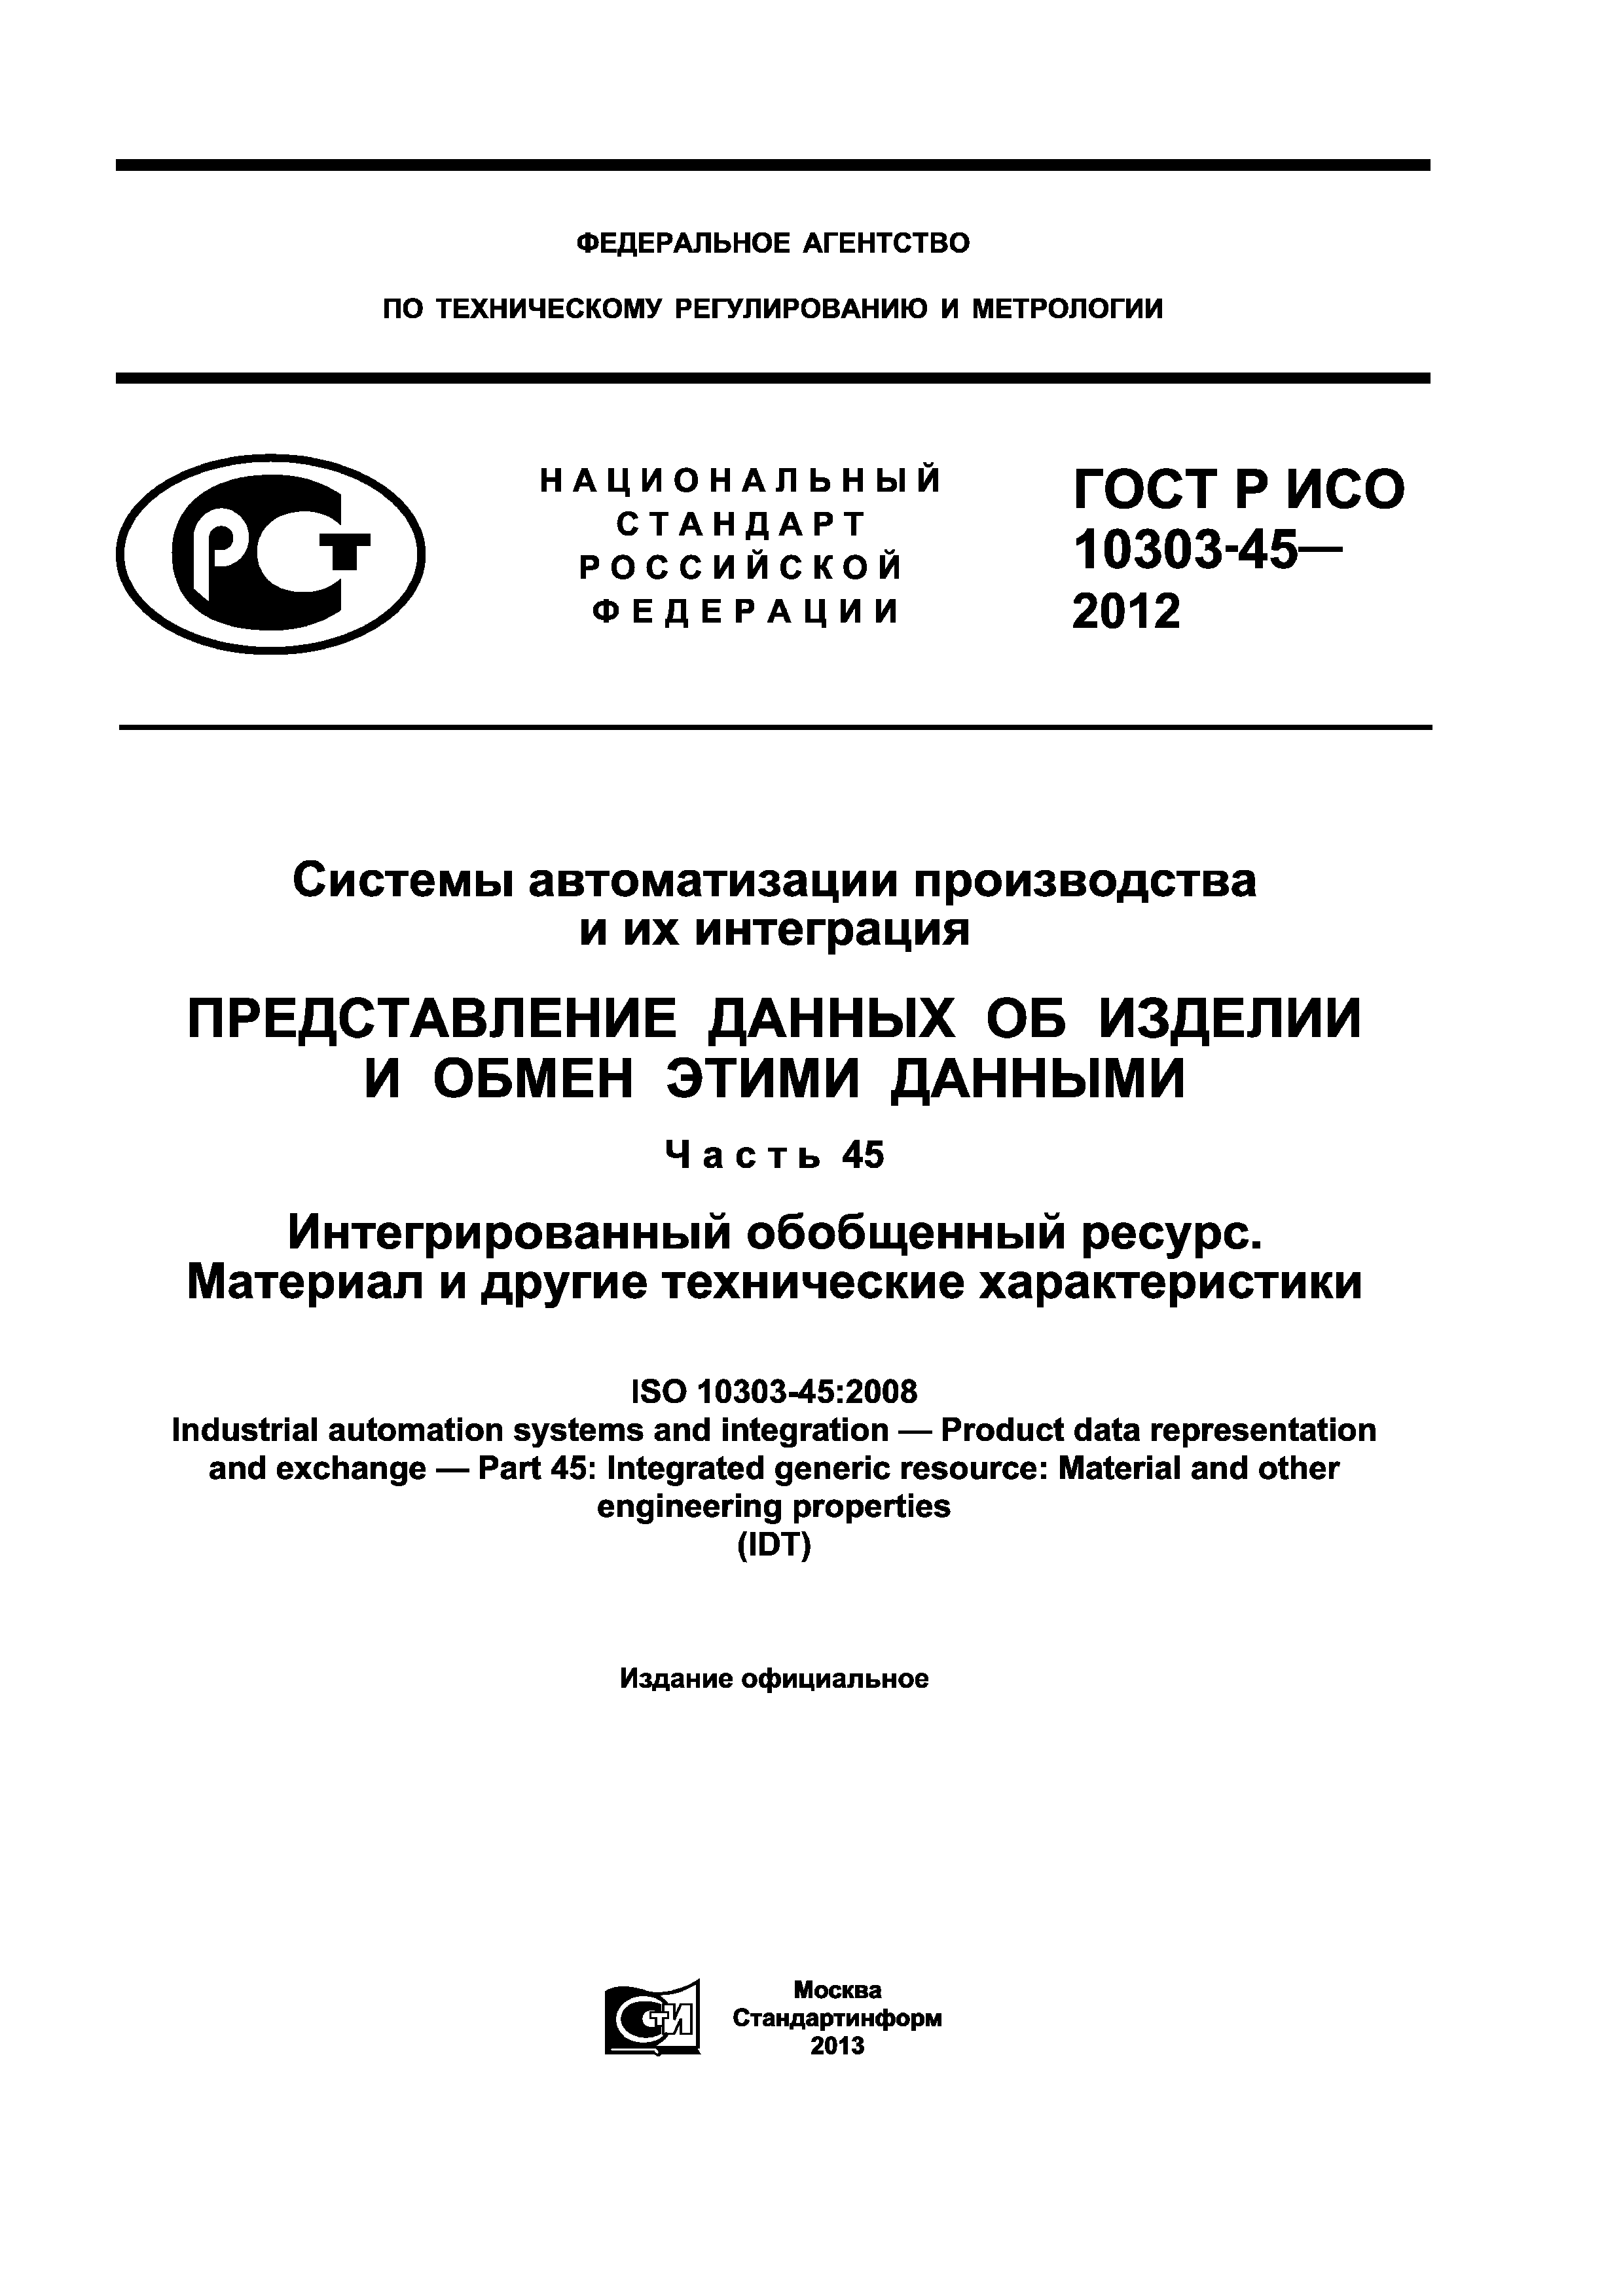 ГОСТ Р ИСО 10303-45-2012